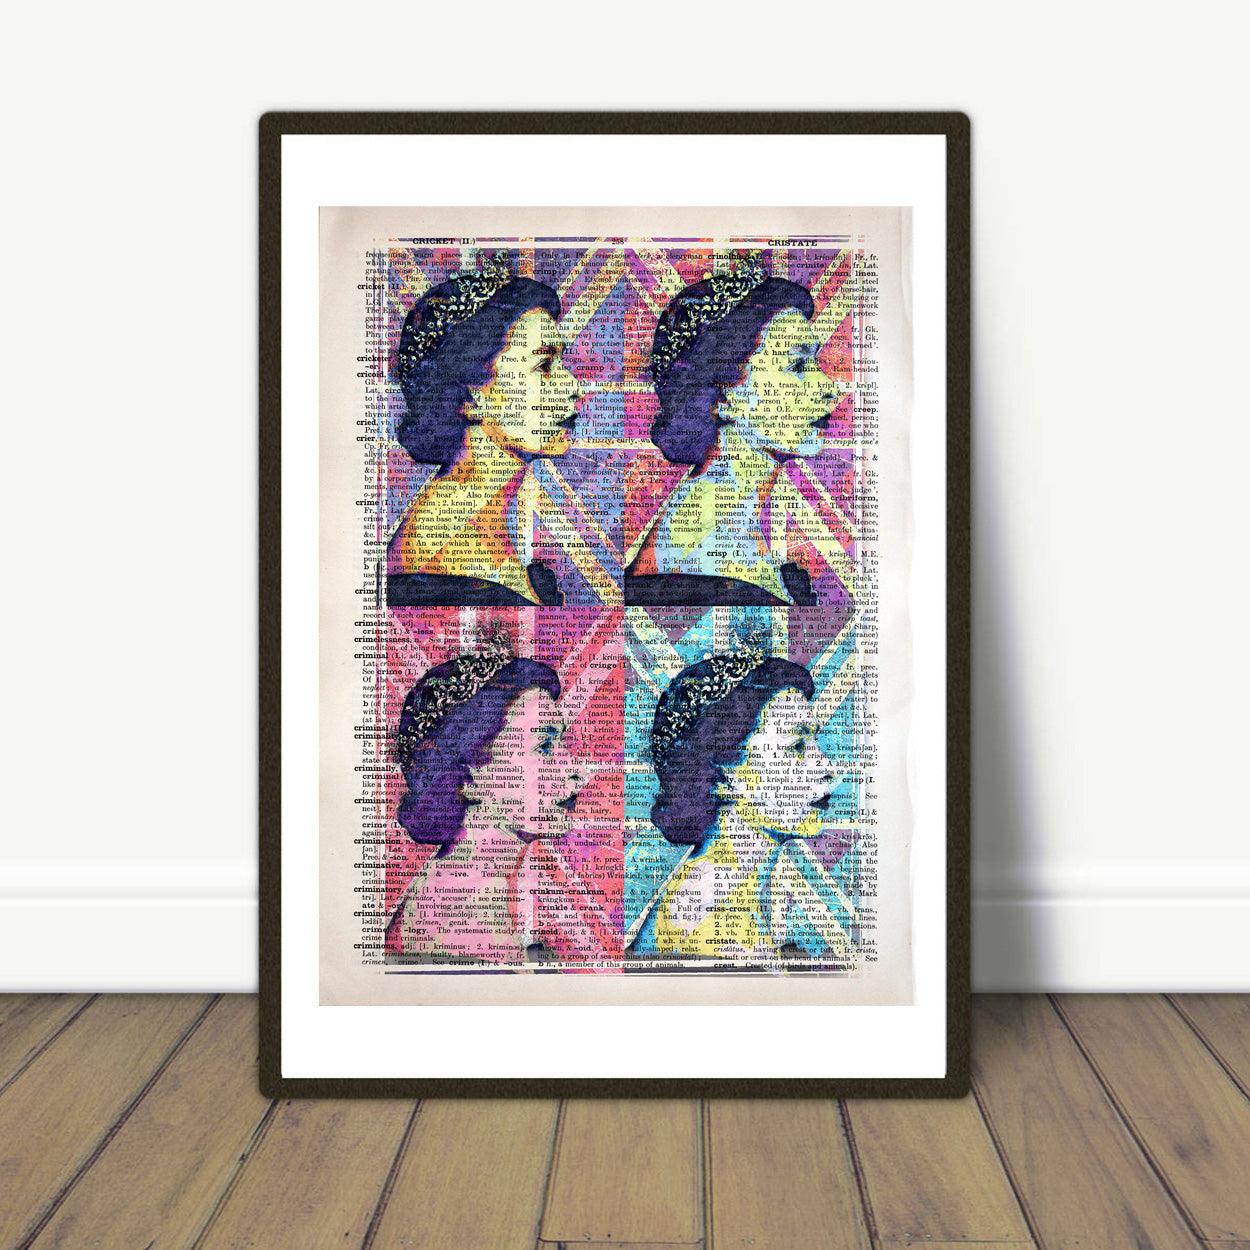 Queen Elizabeth II - Pop Art Andy Warhol Inspired Art Poster - ArtCursor